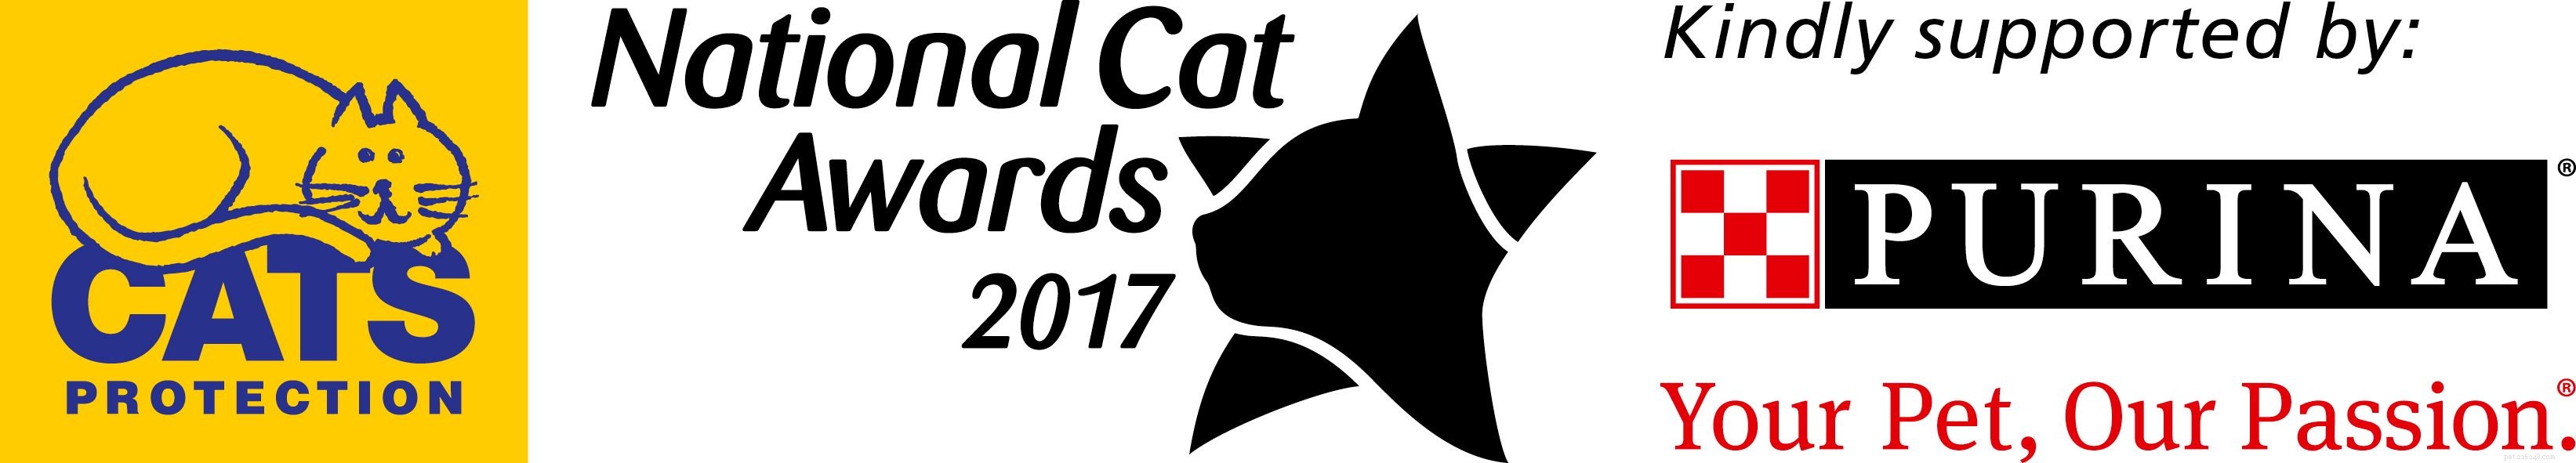 Seznamte se s finalisty kategorie Nejšetrnější kočka v soutěži National Cat Awards 2017!